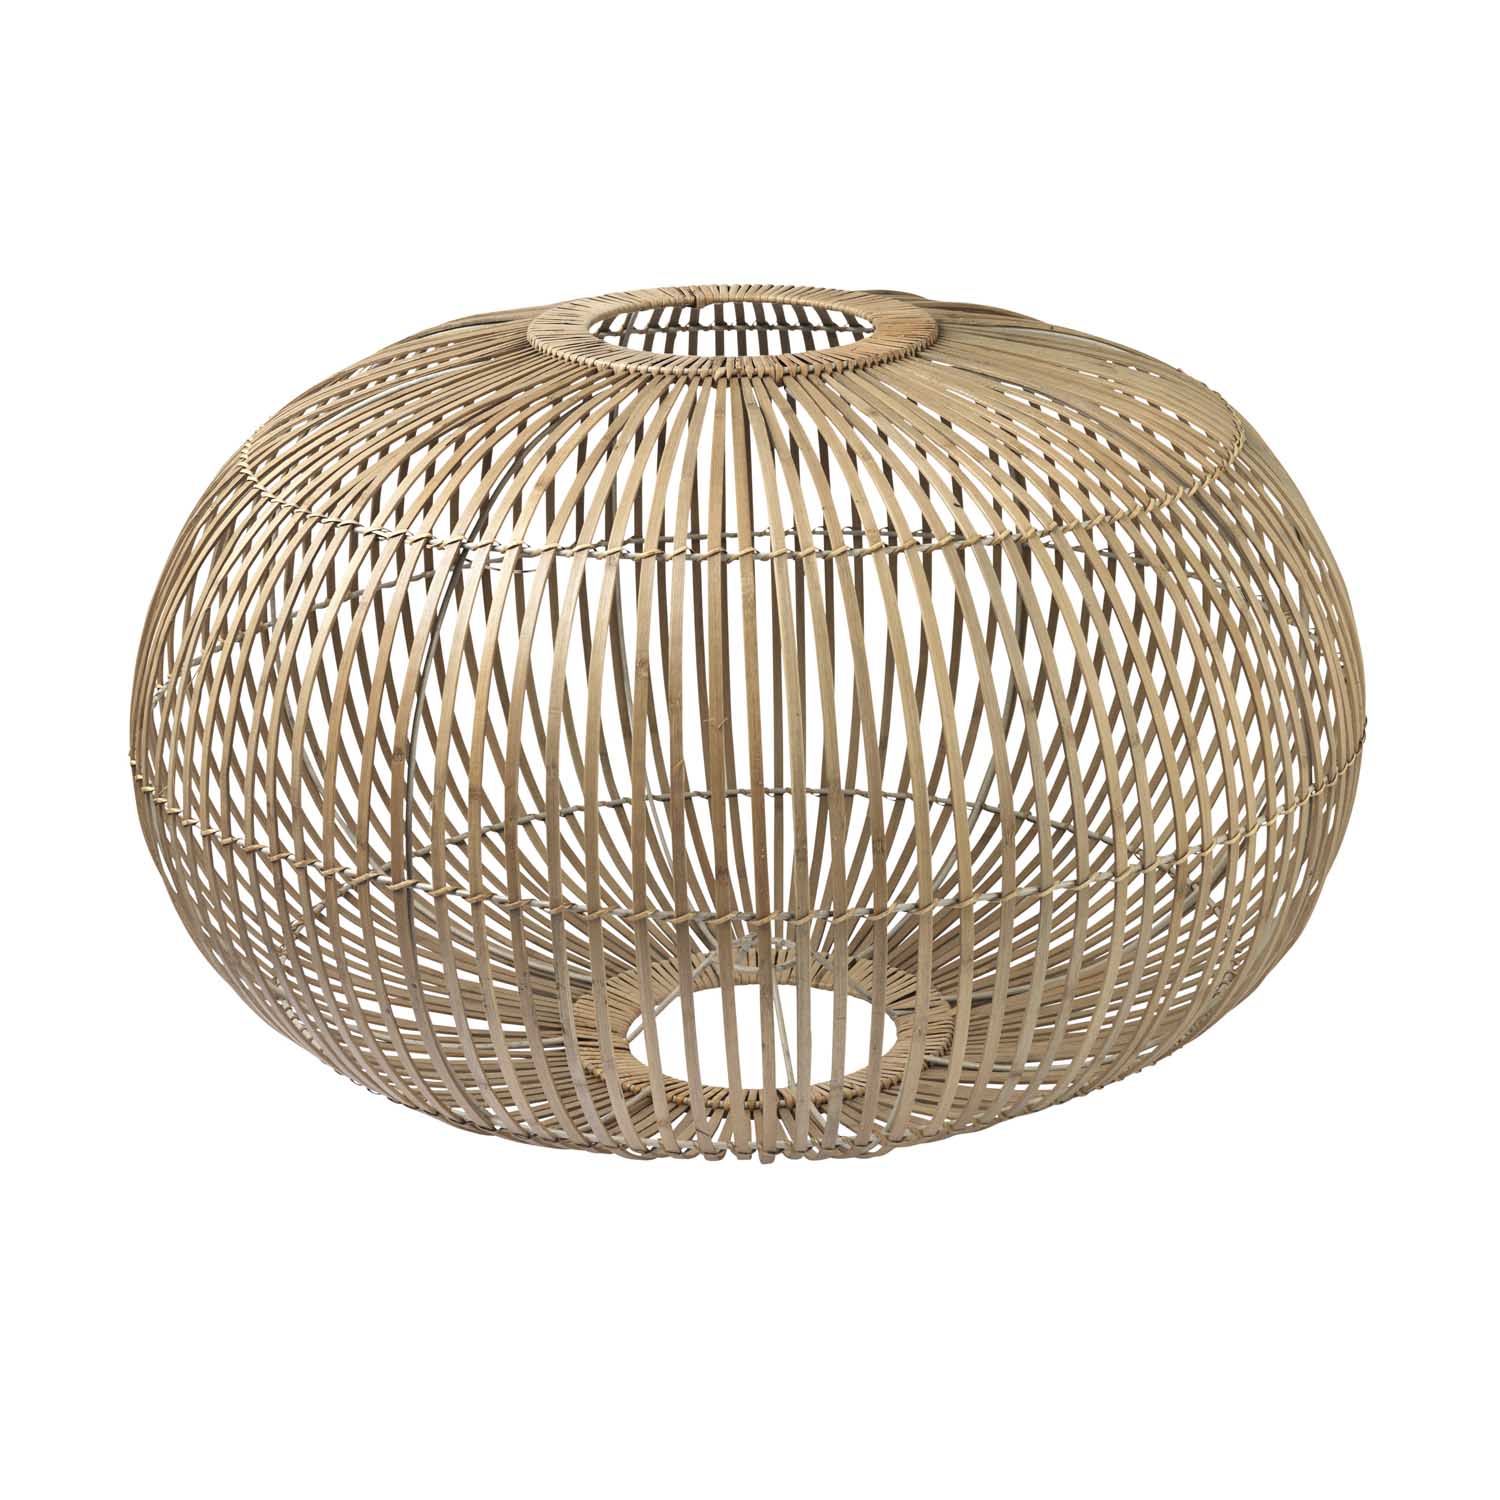 BROSTE COPENHAGEN Zep lampeskærm til ophæng - natur bambus, rund (Ø68)